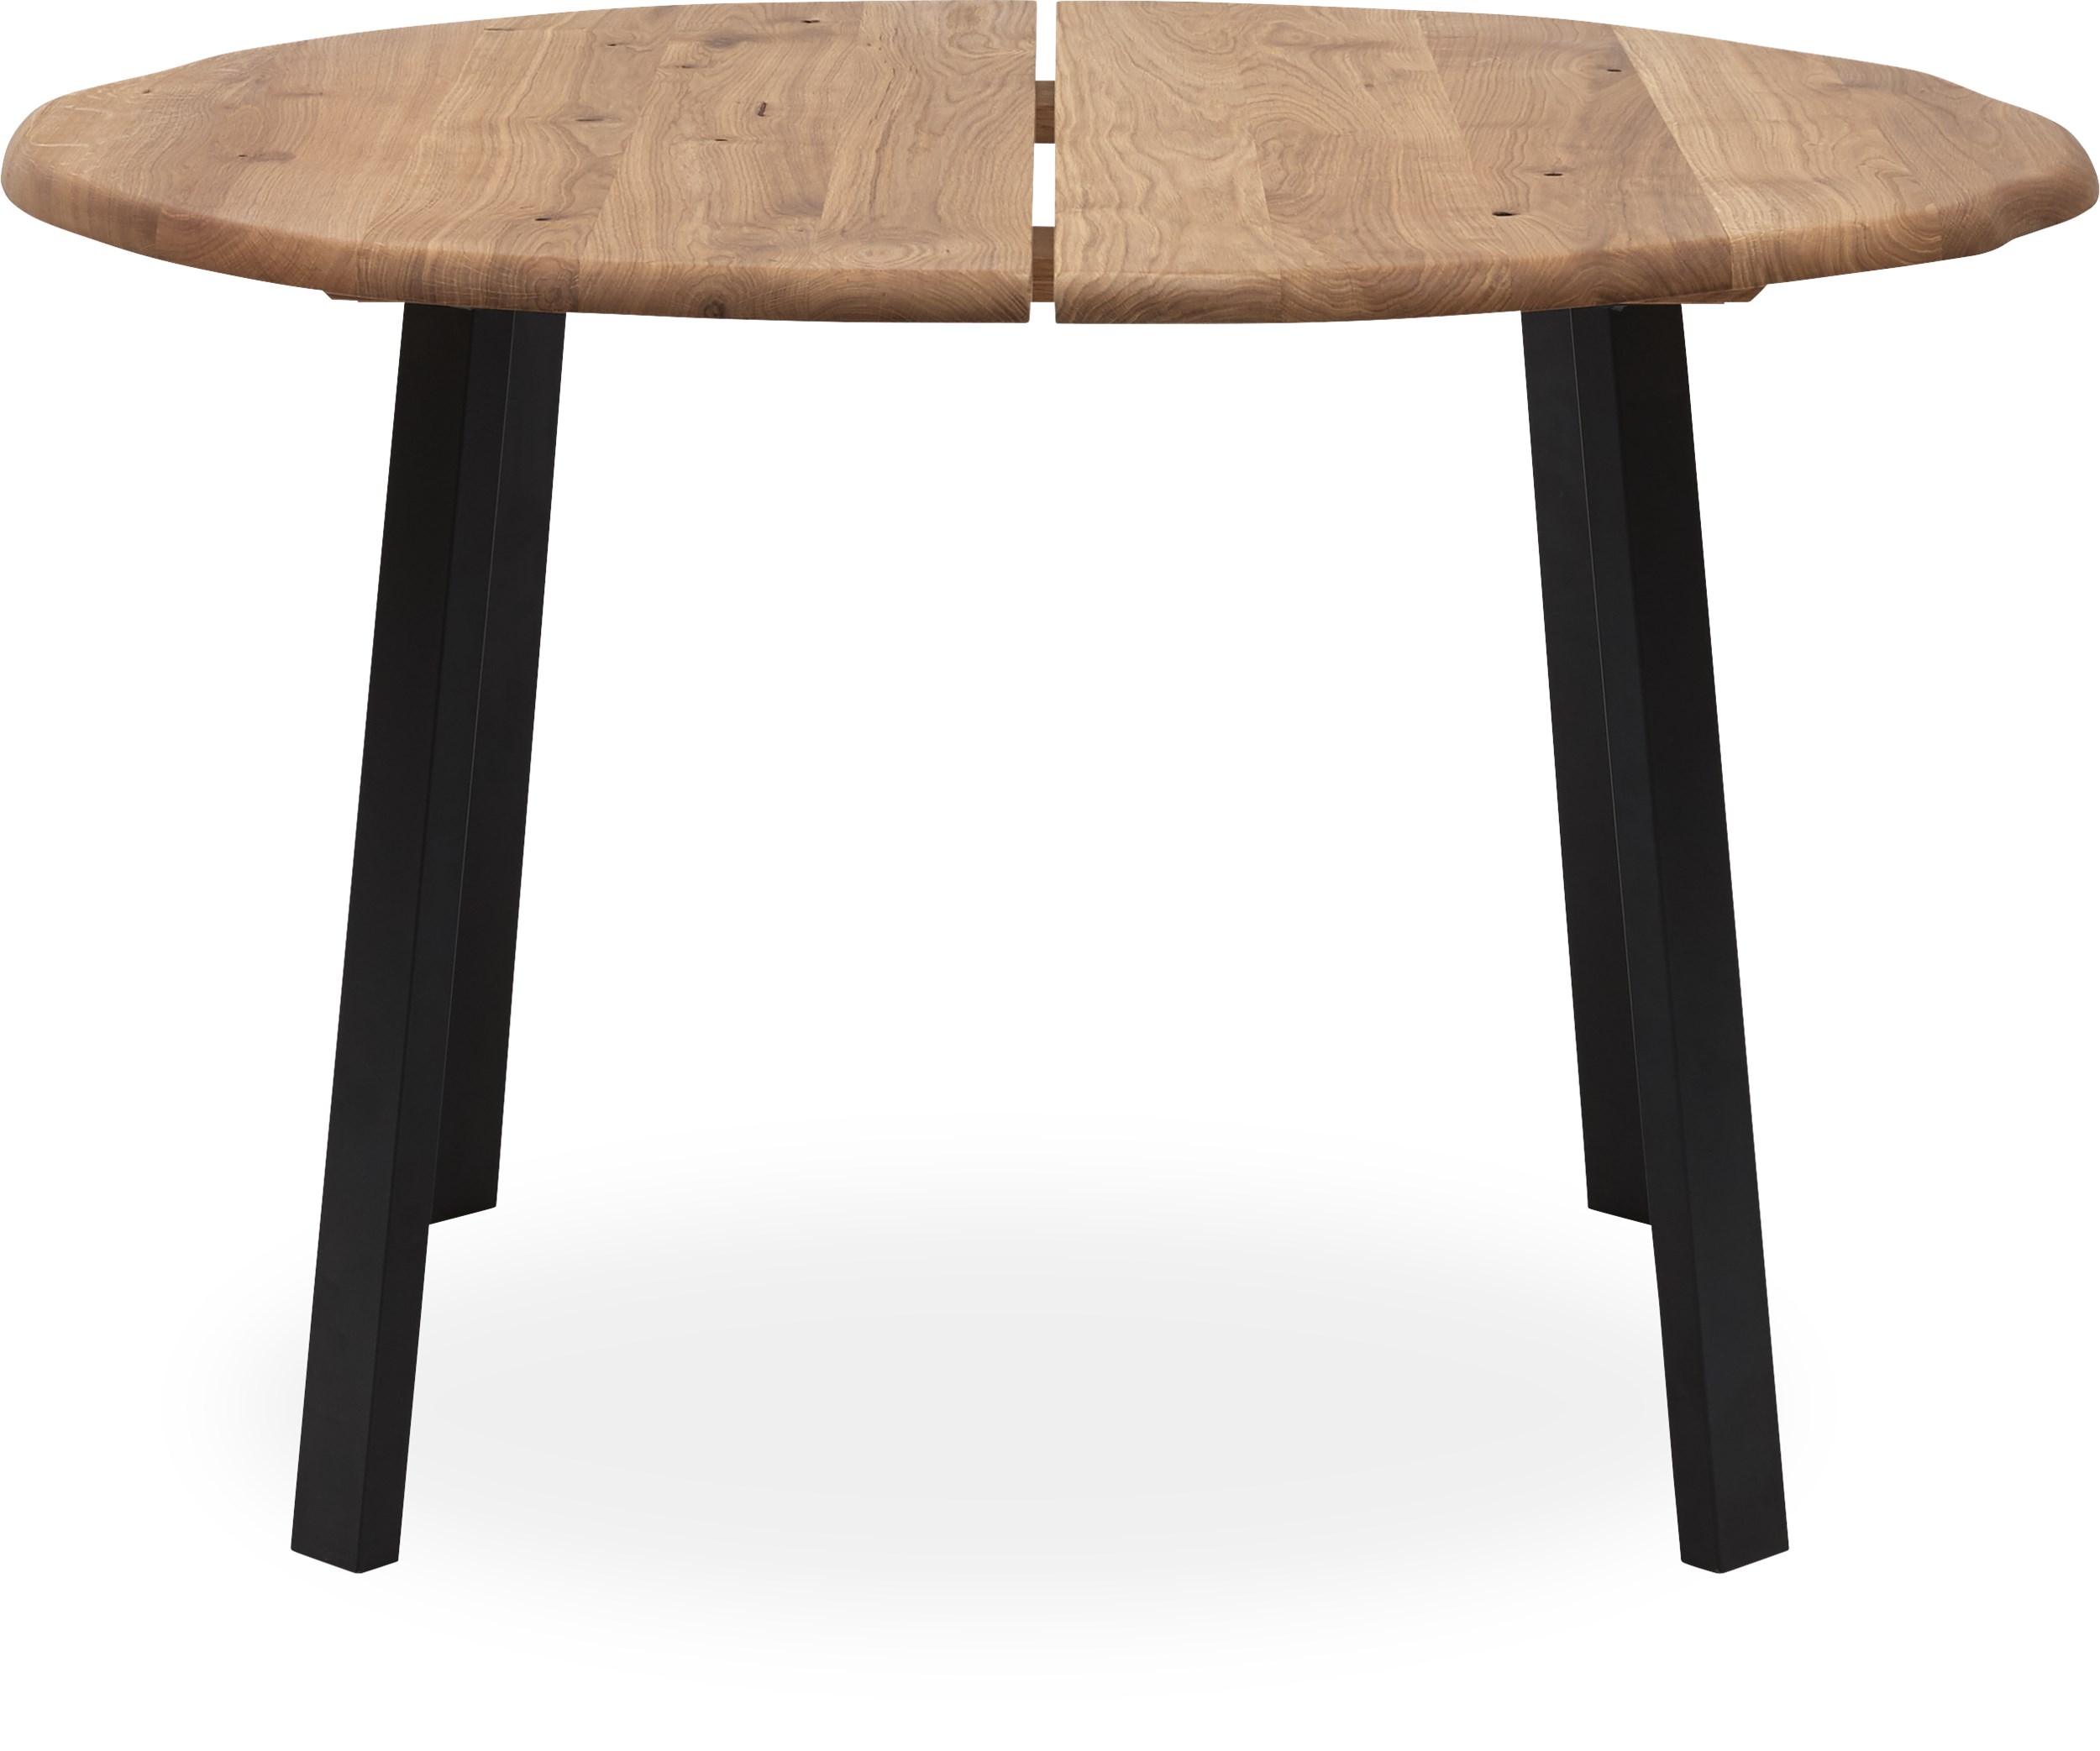 True Spisebord 120 x 75 cm - Massiv naturolieret eg og ben i sort pulverlakeret metal